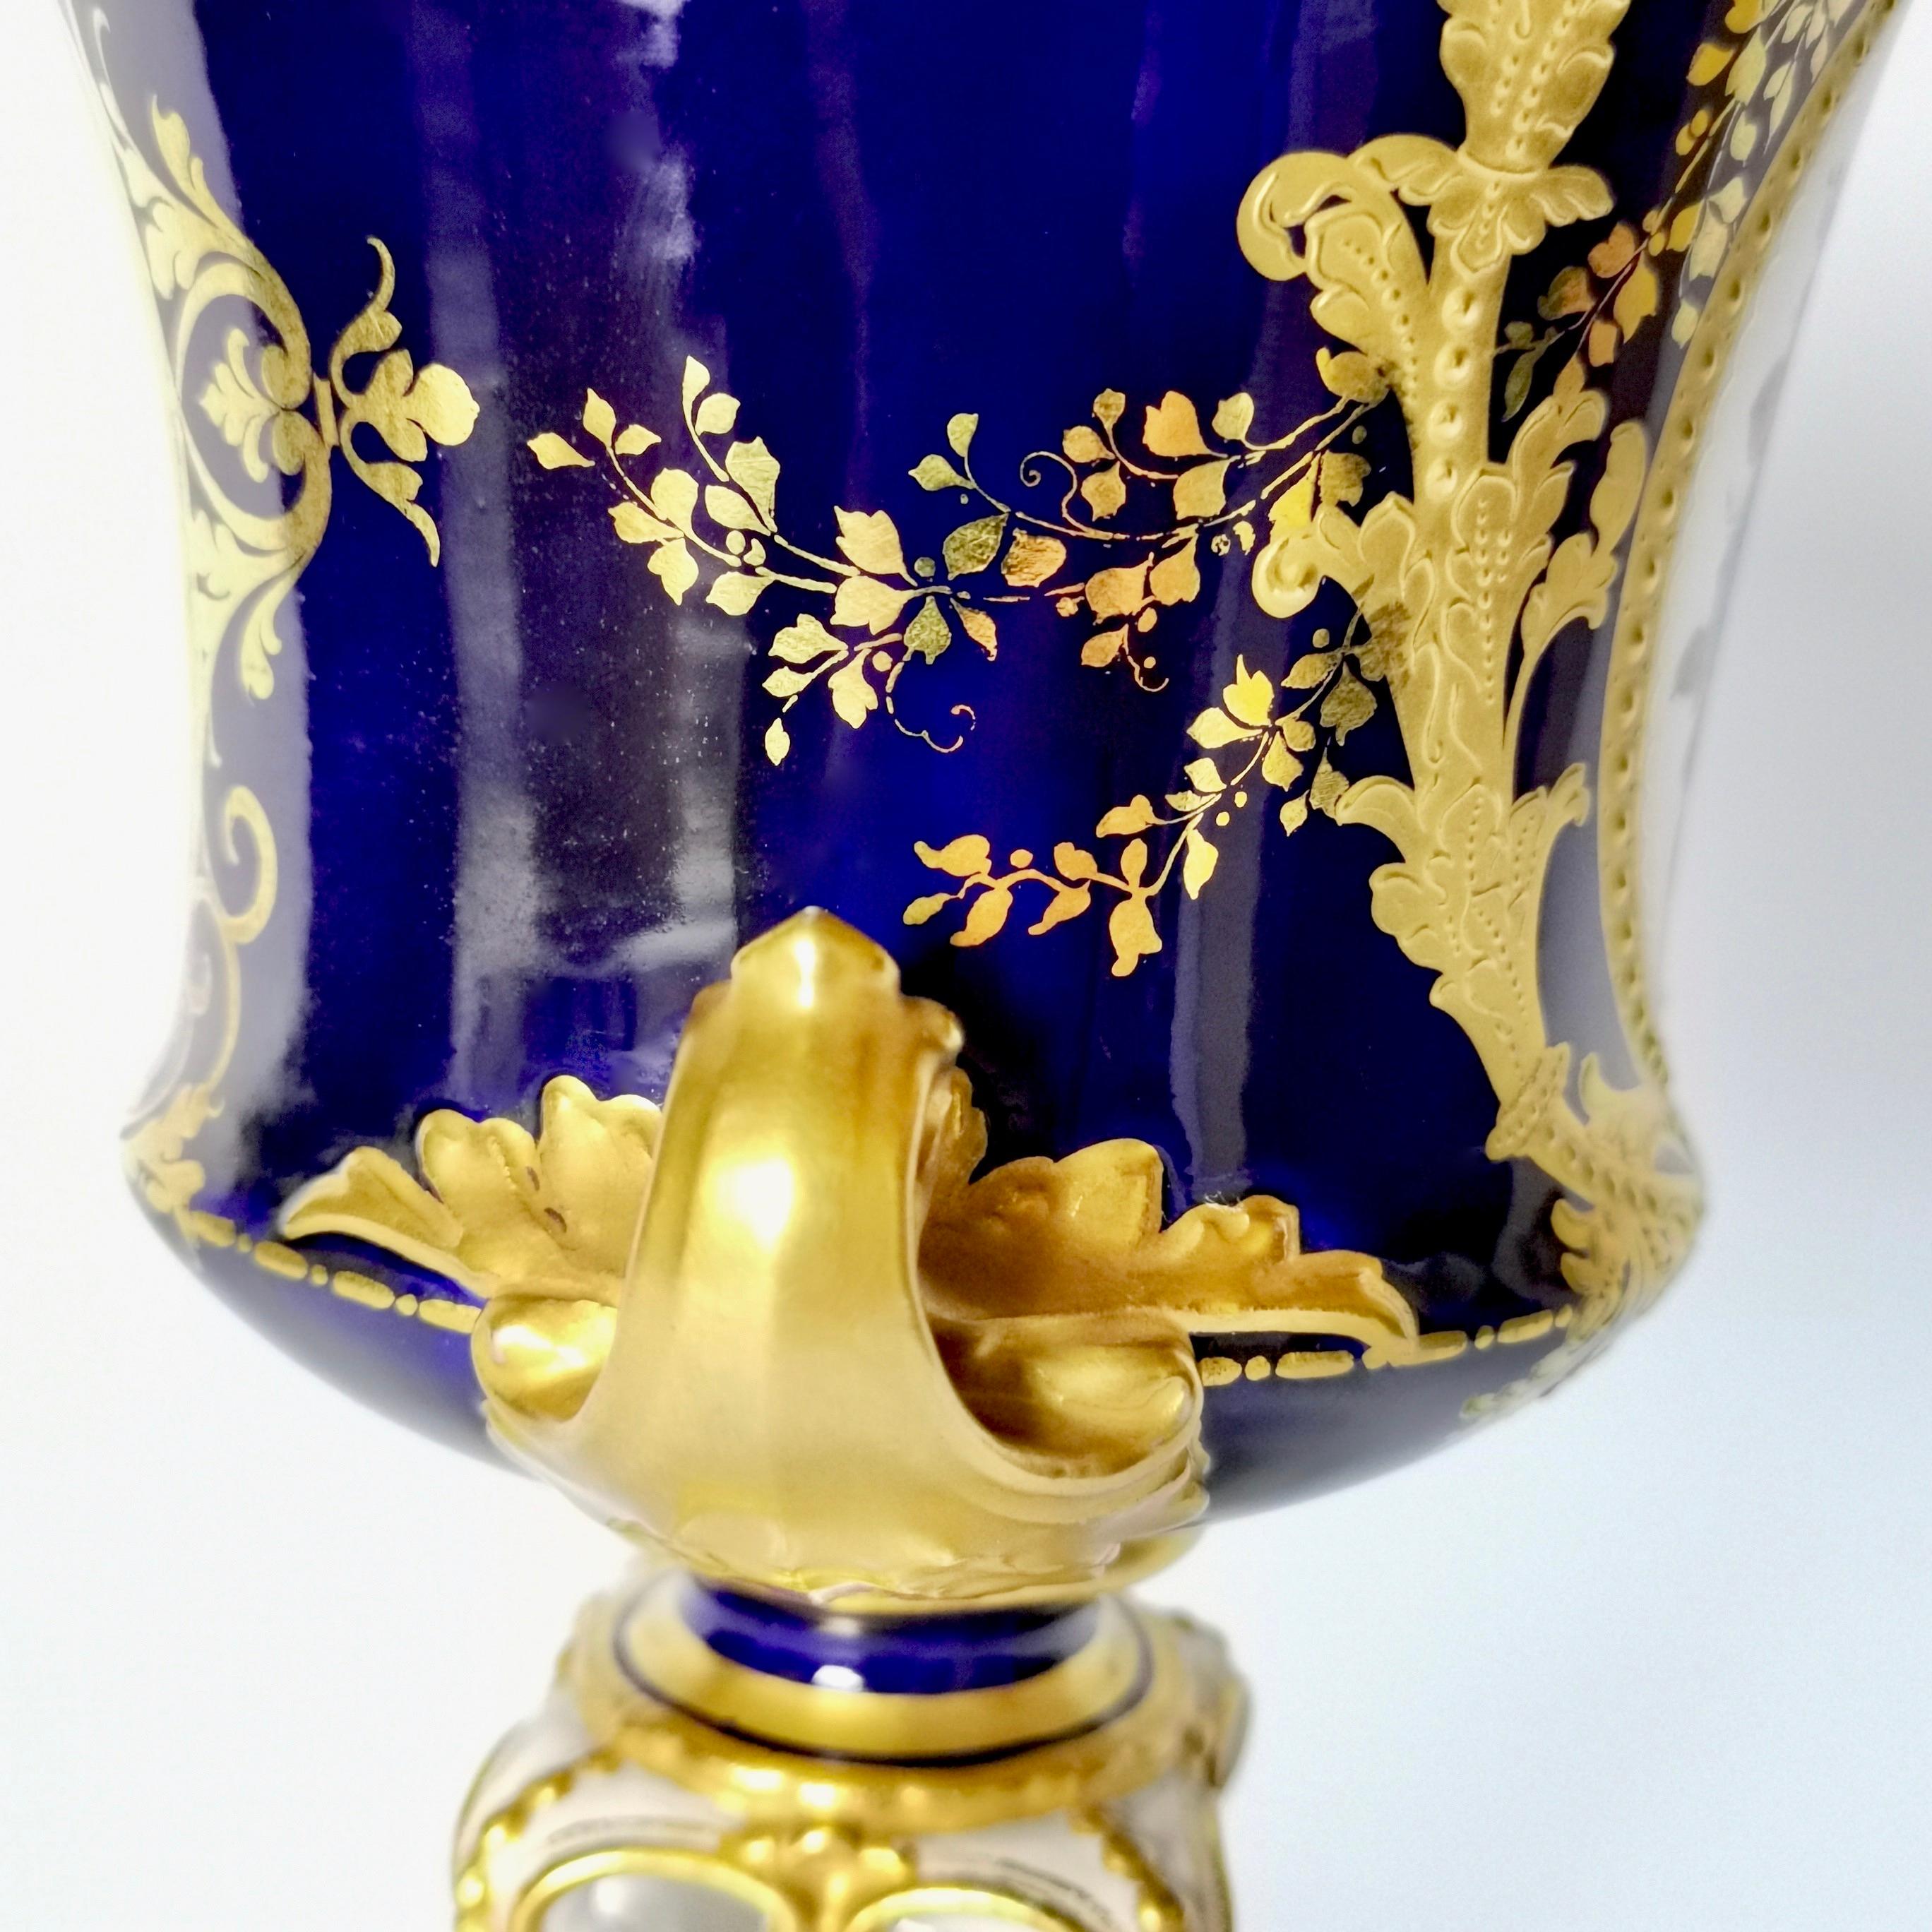 Royal Crown Derby Porcelain Campana Vase, Cobalt Blue, Flowers by C Gresley 1916 For Sale 3